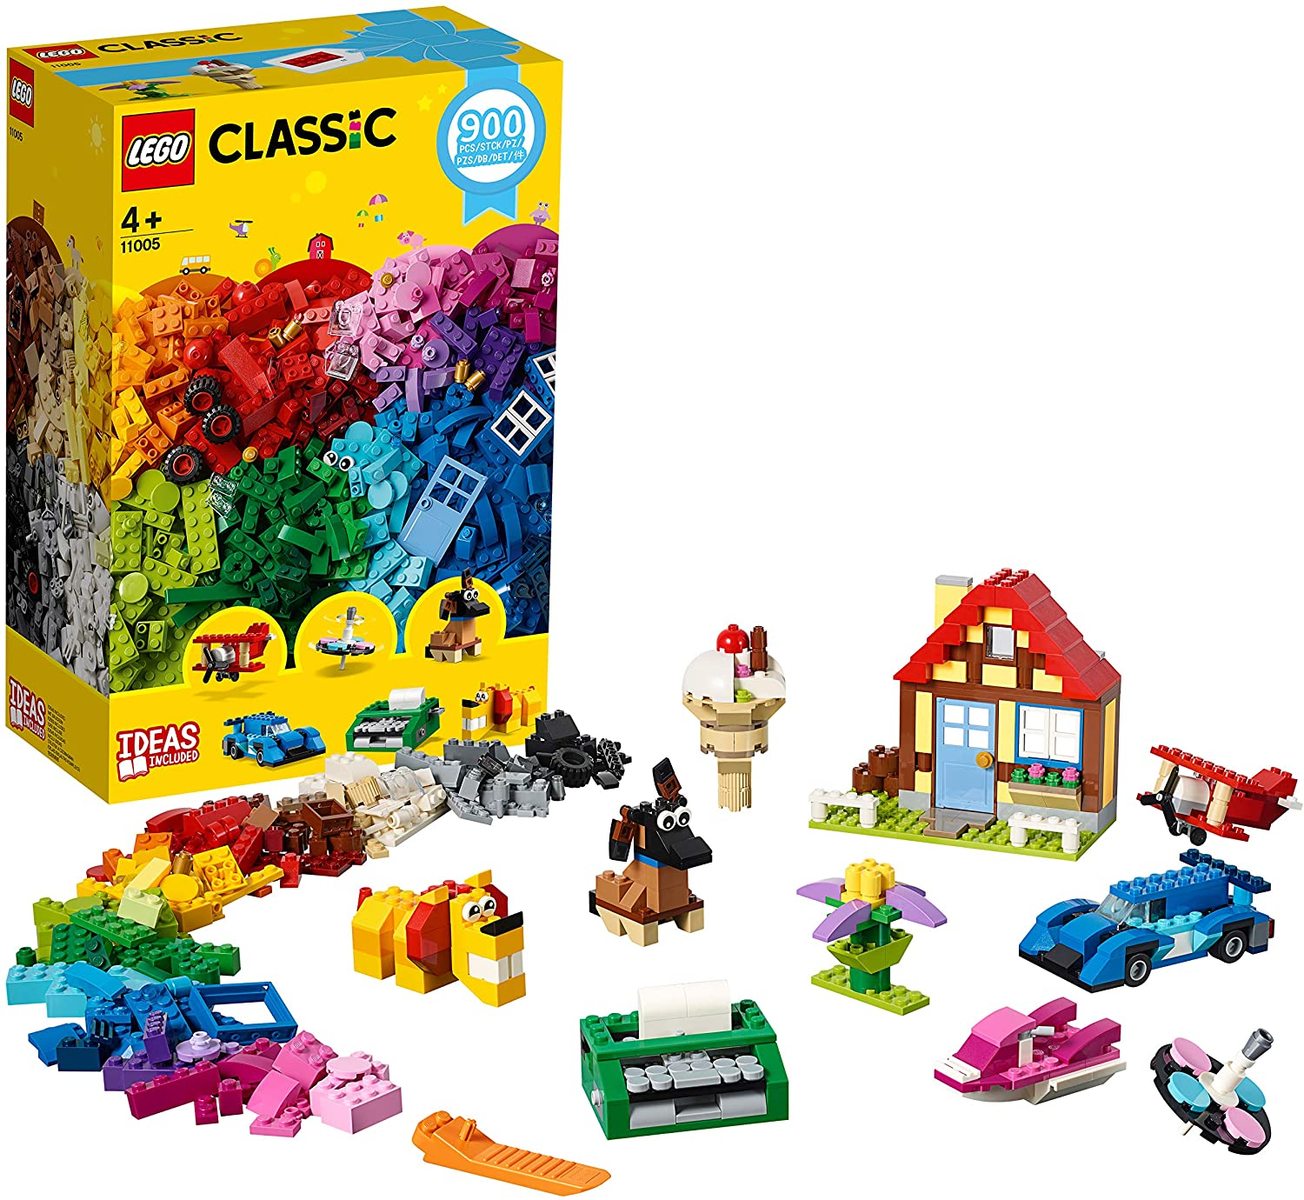 楽天市場 レゴ Lego クラシック 4歳以上 900ピース Lego Classic ブロック 知育玩具 おもちゃ ホビー 男の子 女の子 レゴブロック アイデア ボックス パーツ Shopアベイル